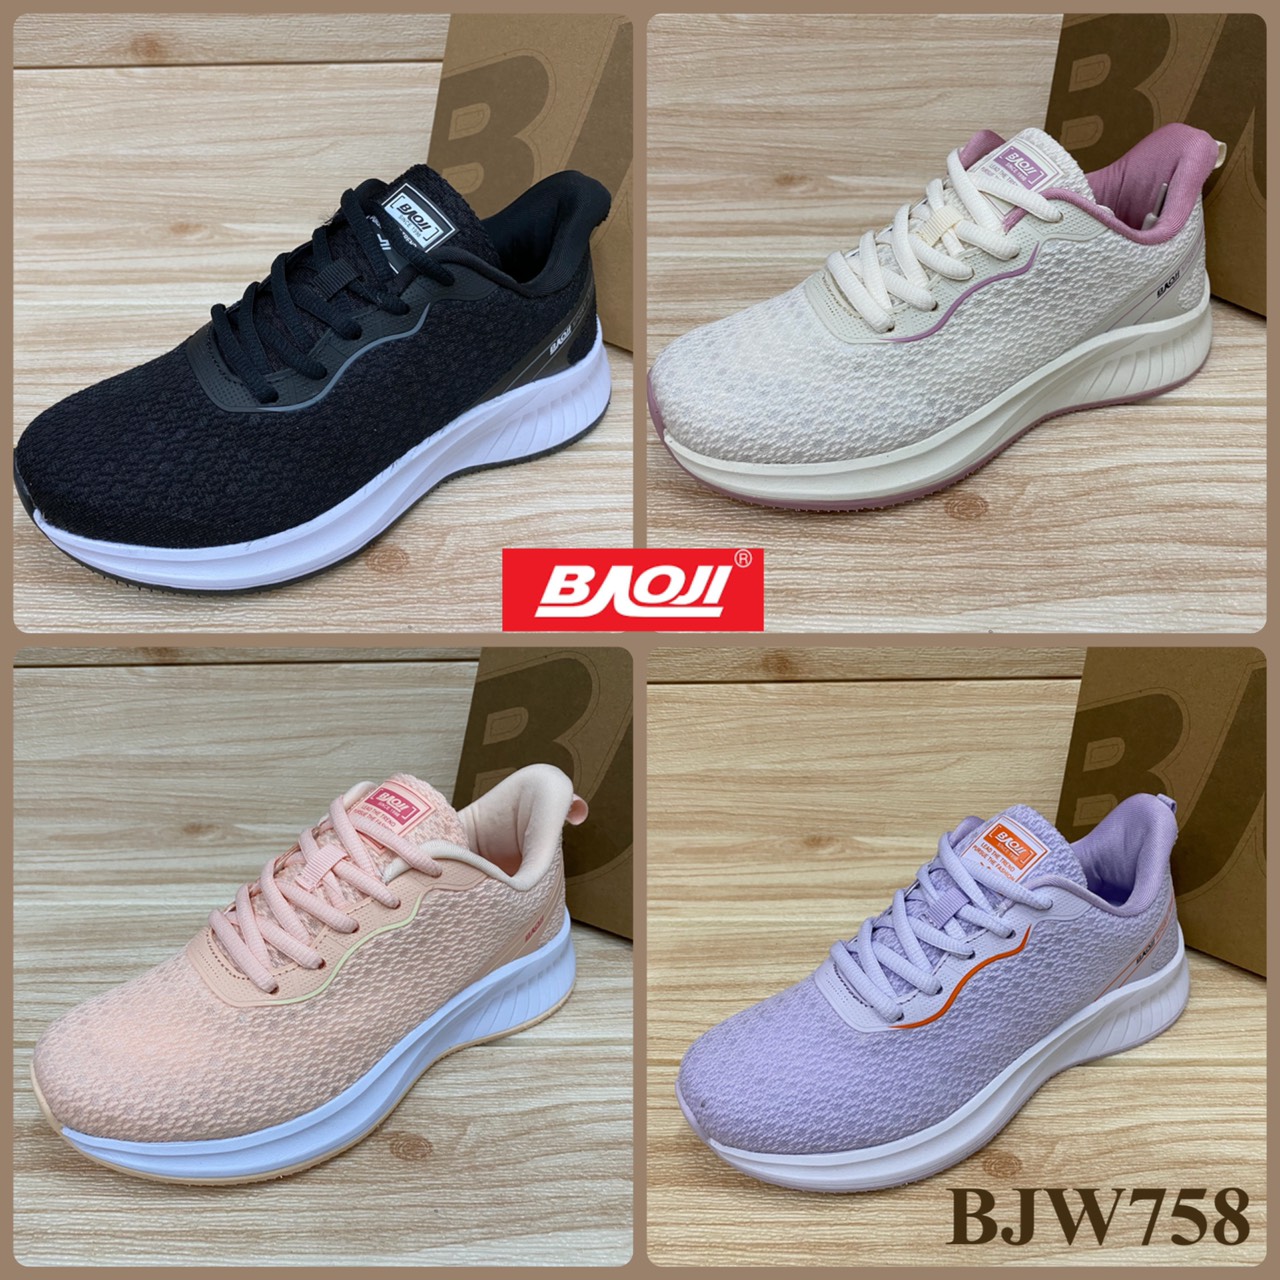 Baoji BJW 758 รองเท้าสนิกเกอร์  (37-41) สีดำ/ครีม/ชมพู/ม่วง